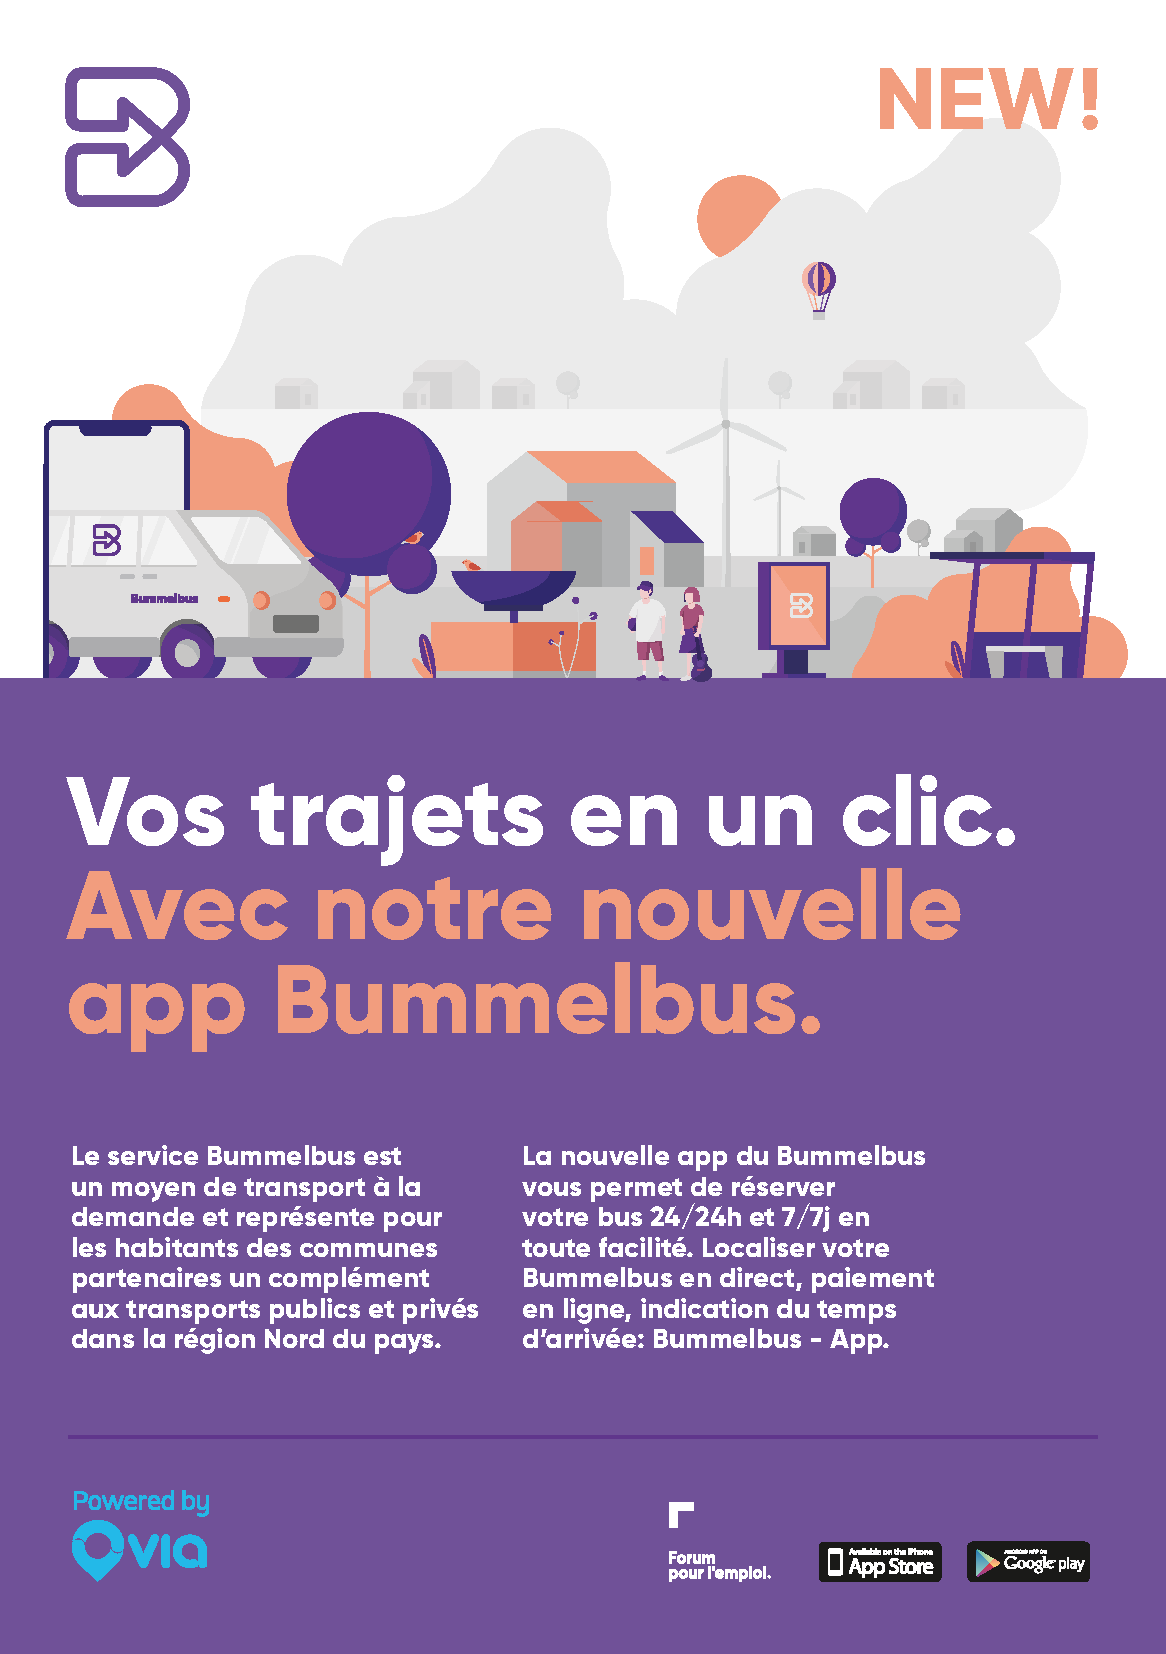 Bummelbus - App